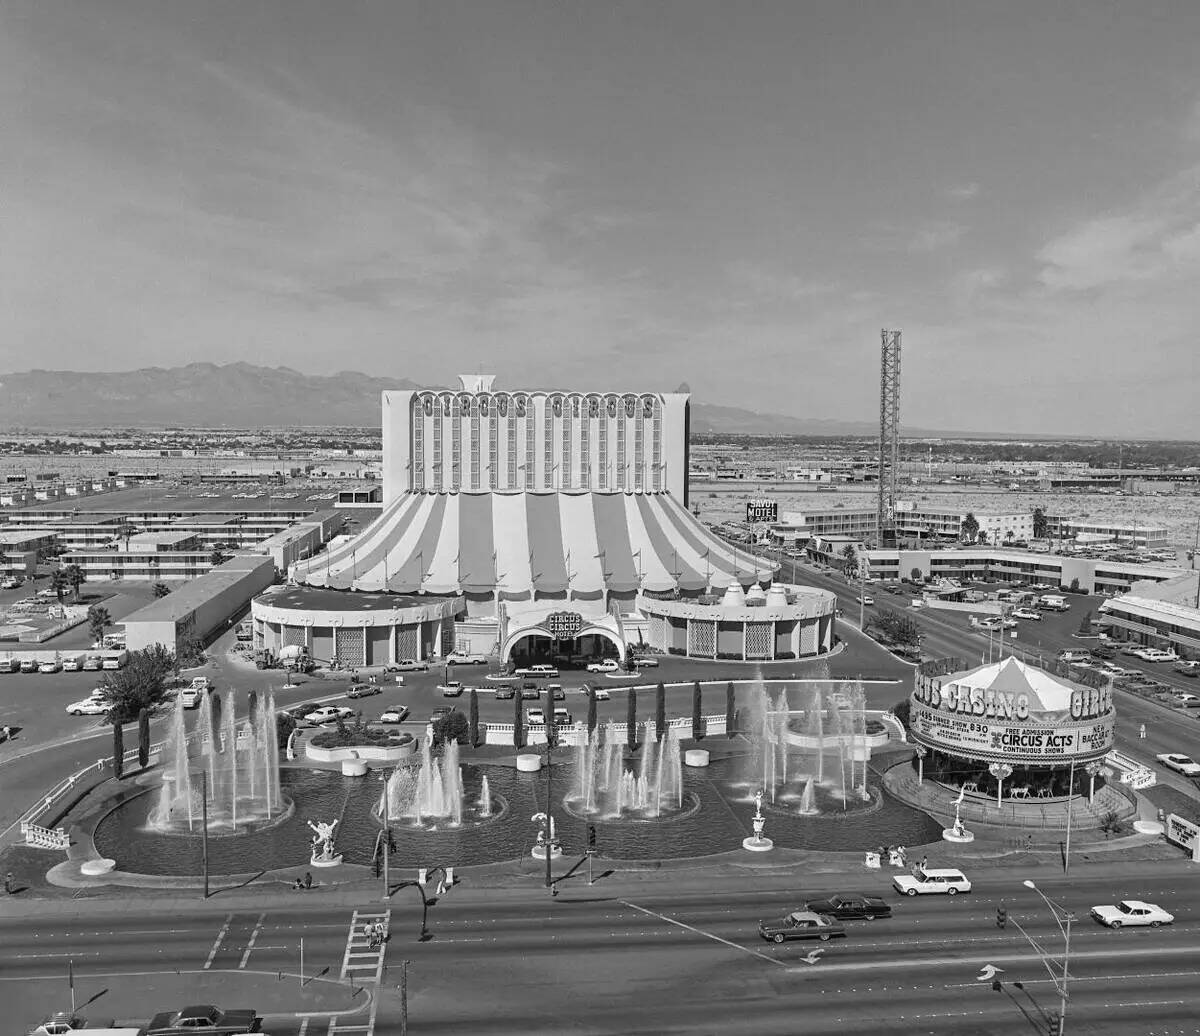 El exterior de Circus Circus se ve en esta vista desde la parte superior de Riviera el 21 de se ...